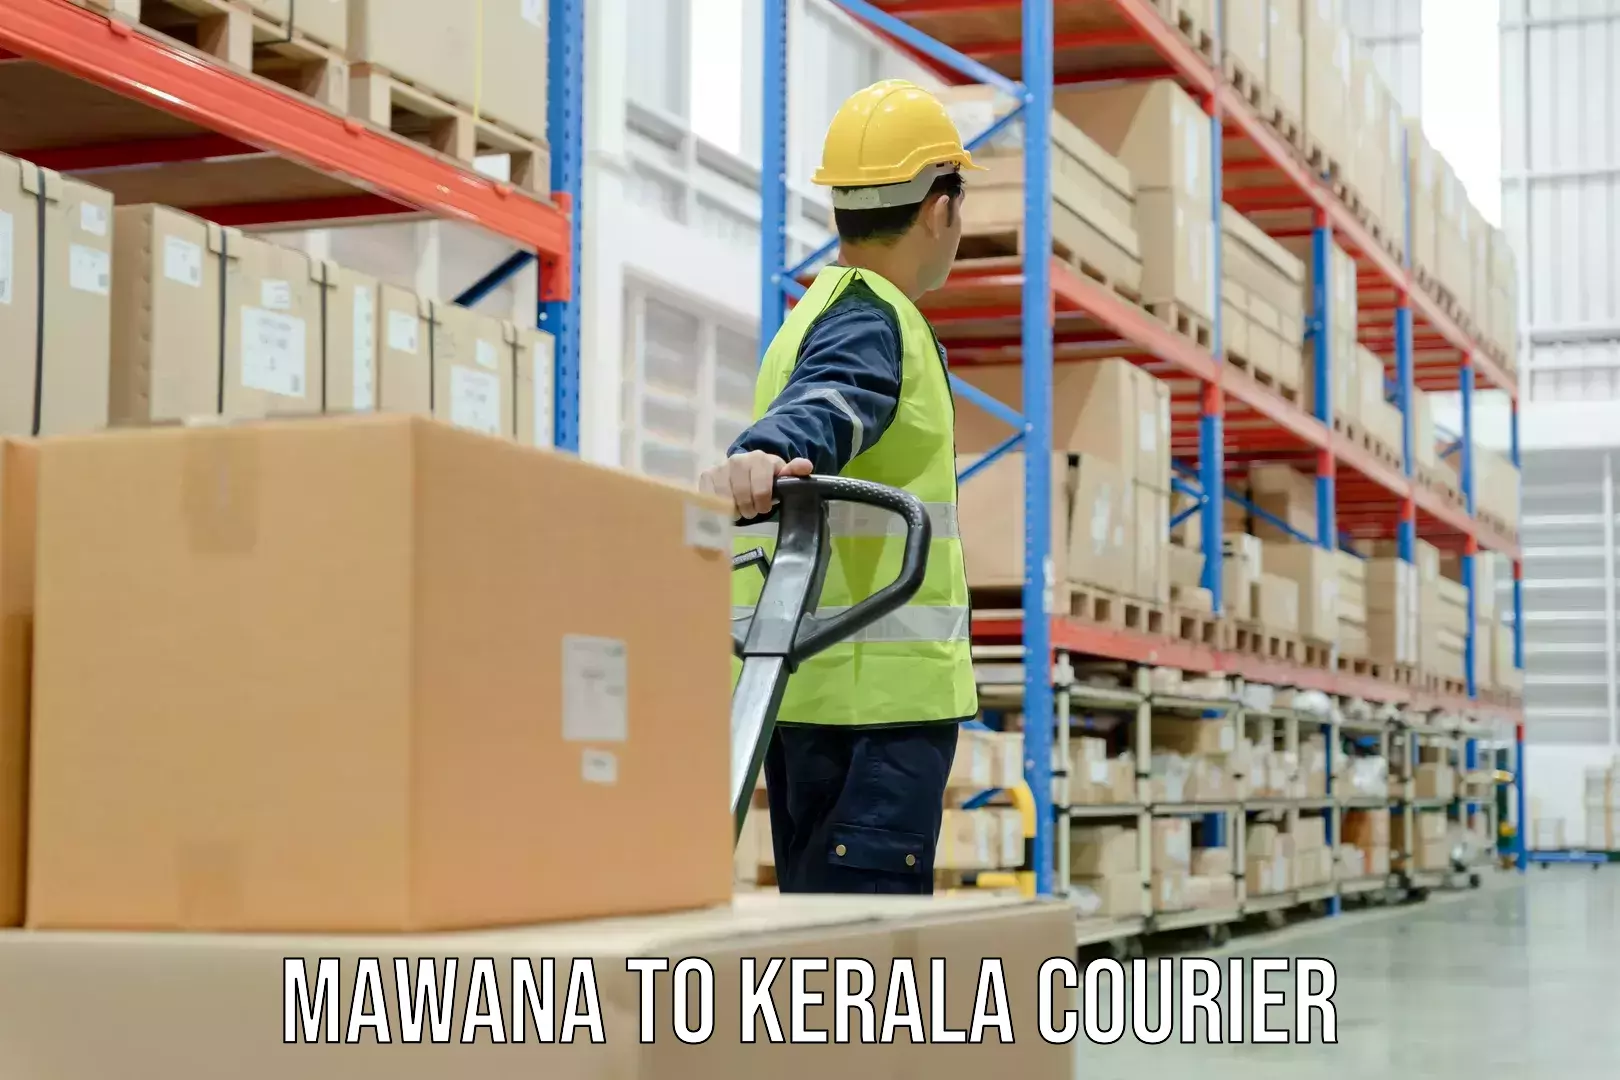 Delivery service partnership Mawana to Kerala